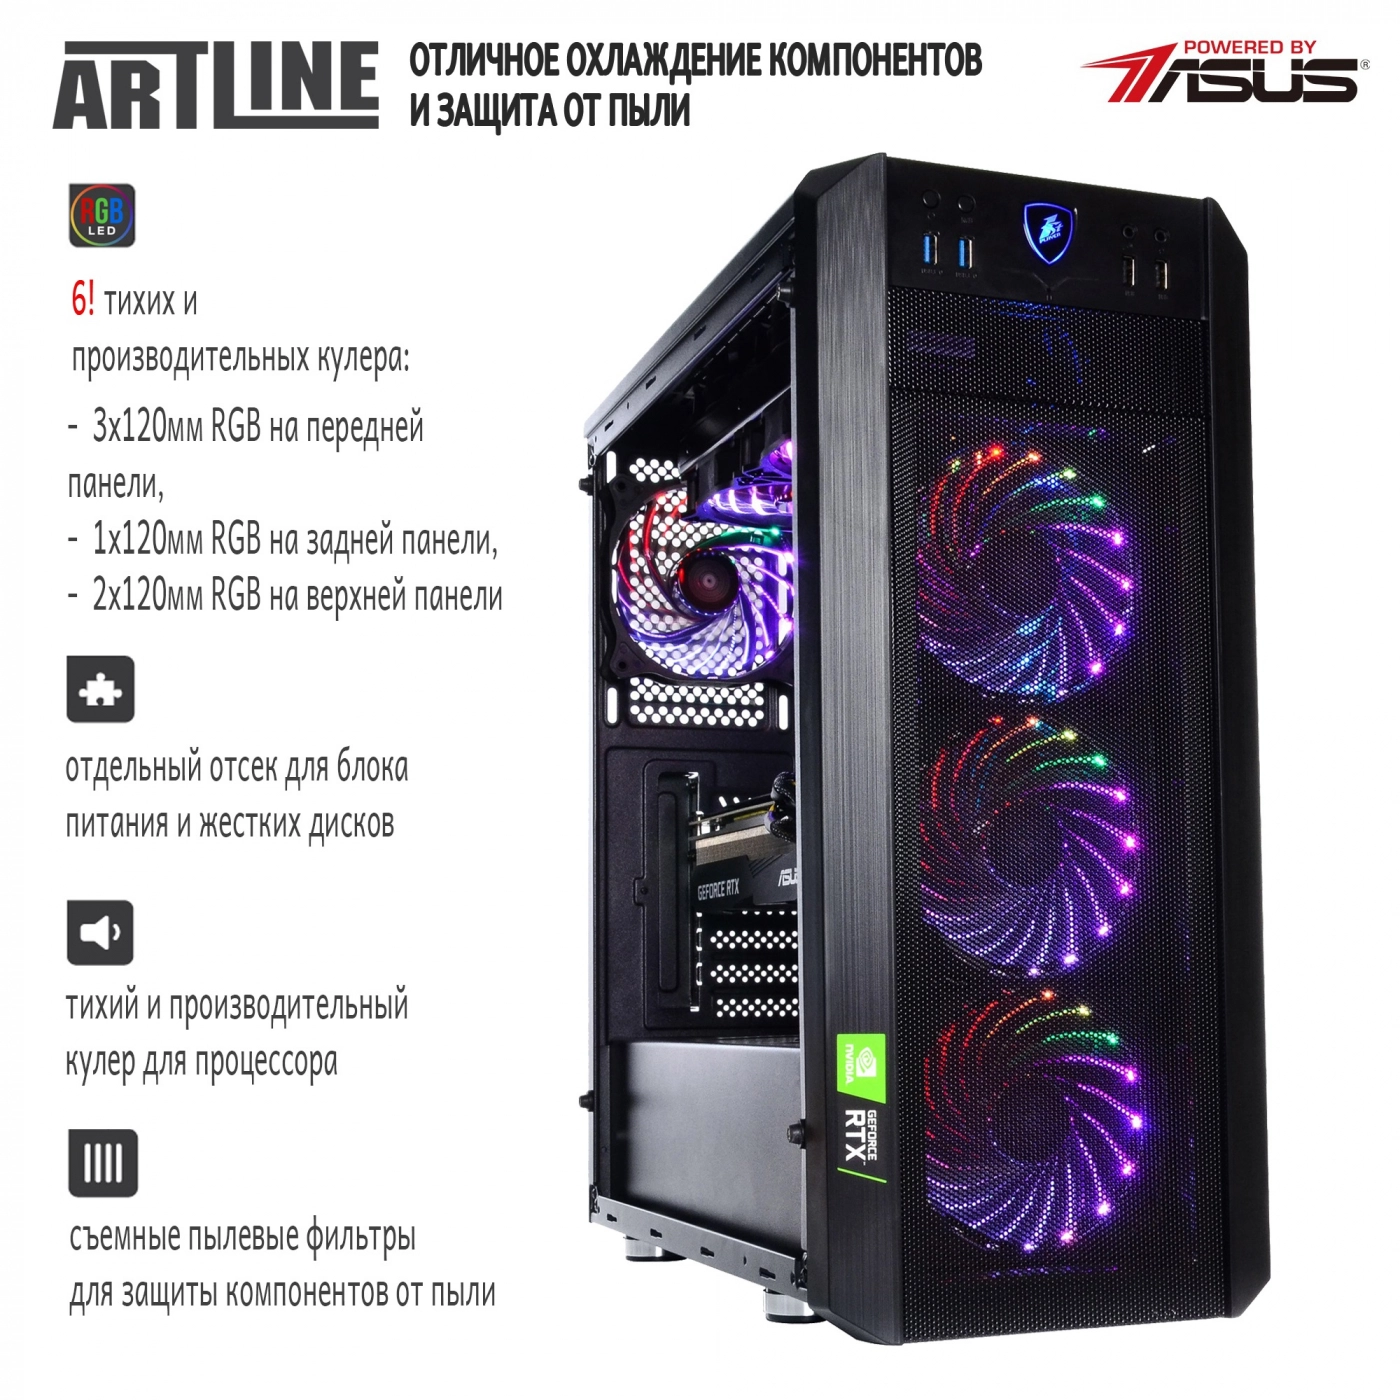 Купить Компьютер ARTLINE Gaming X98v28 - фото 4